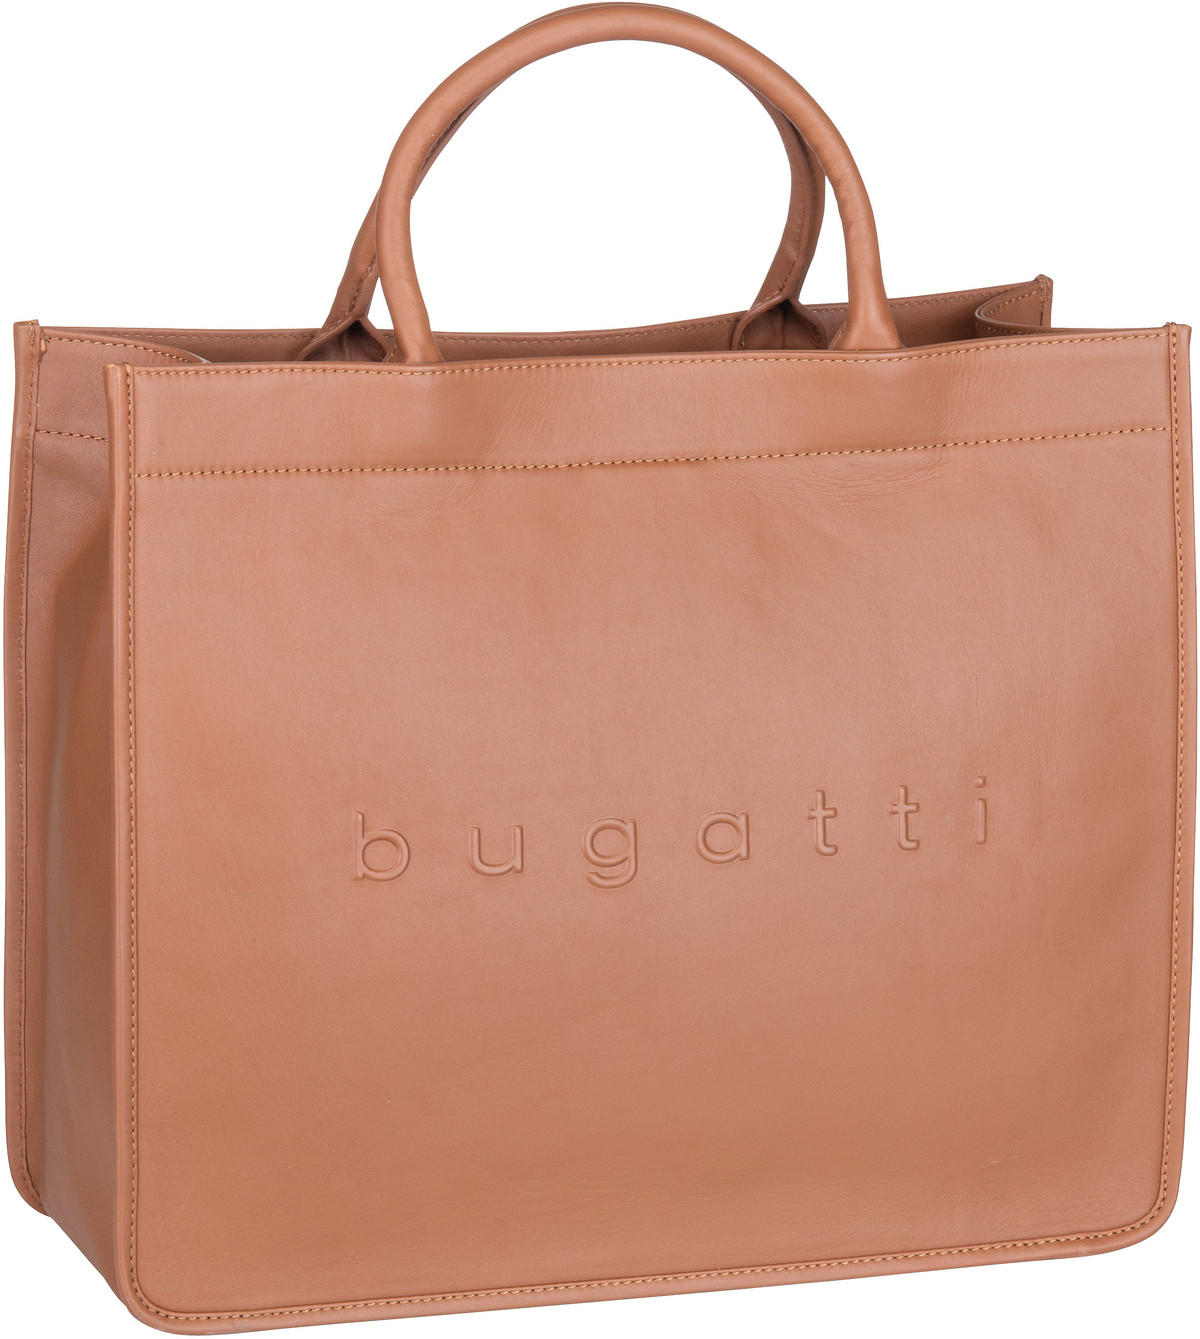 Bugatti Daphne Tote Bag  in Cognac (23.2 Liter), Handtasche